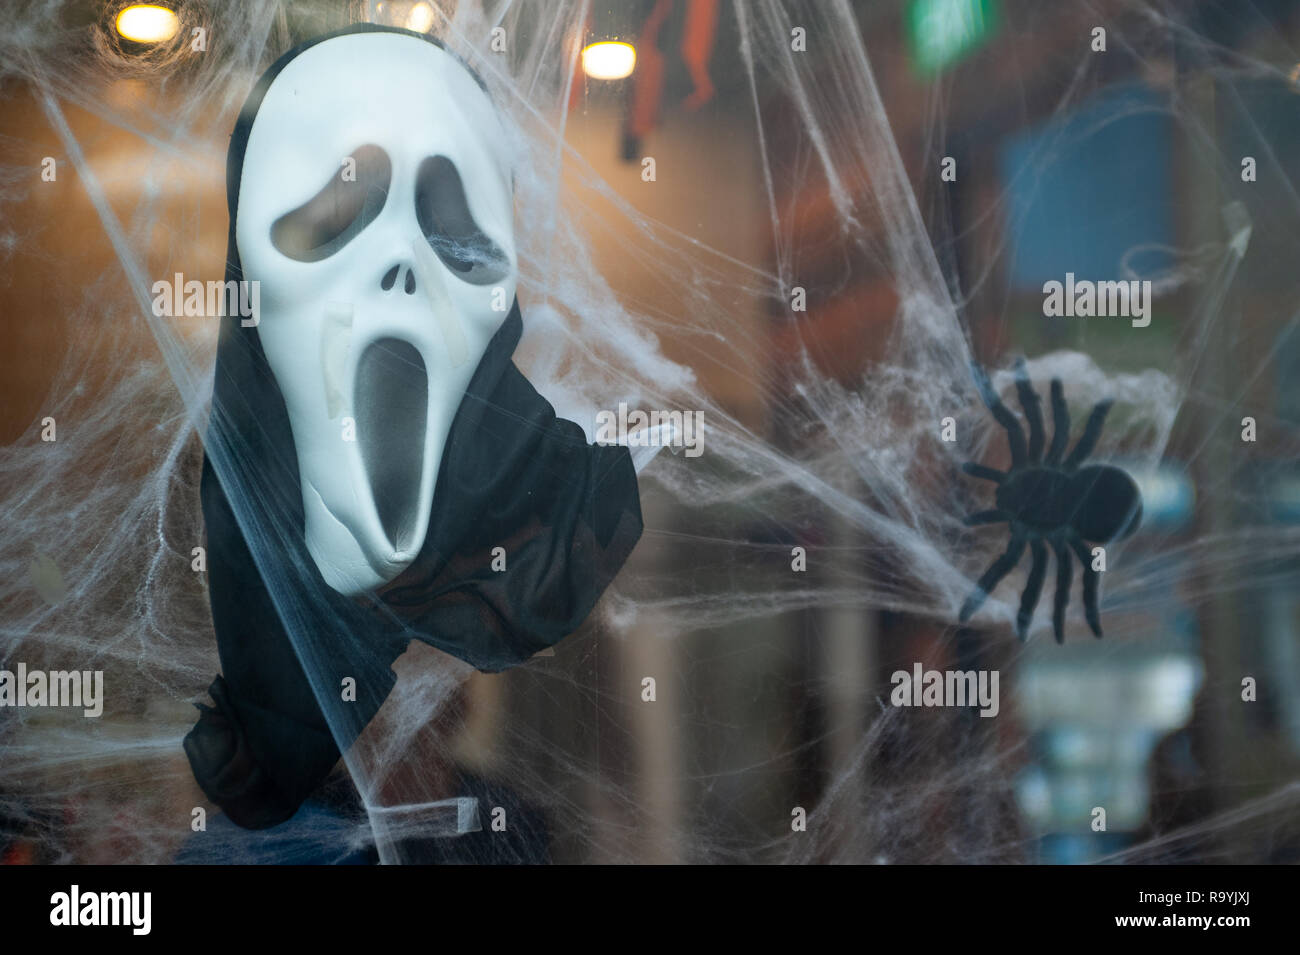 27.10.2018, Singapur, Republik Singapur, Asien - eine Scream-Maske und eine Spinnenattrappe Halloweendekoraton haengen als in 1963, 1999. 0 SL 1. Stockfoto